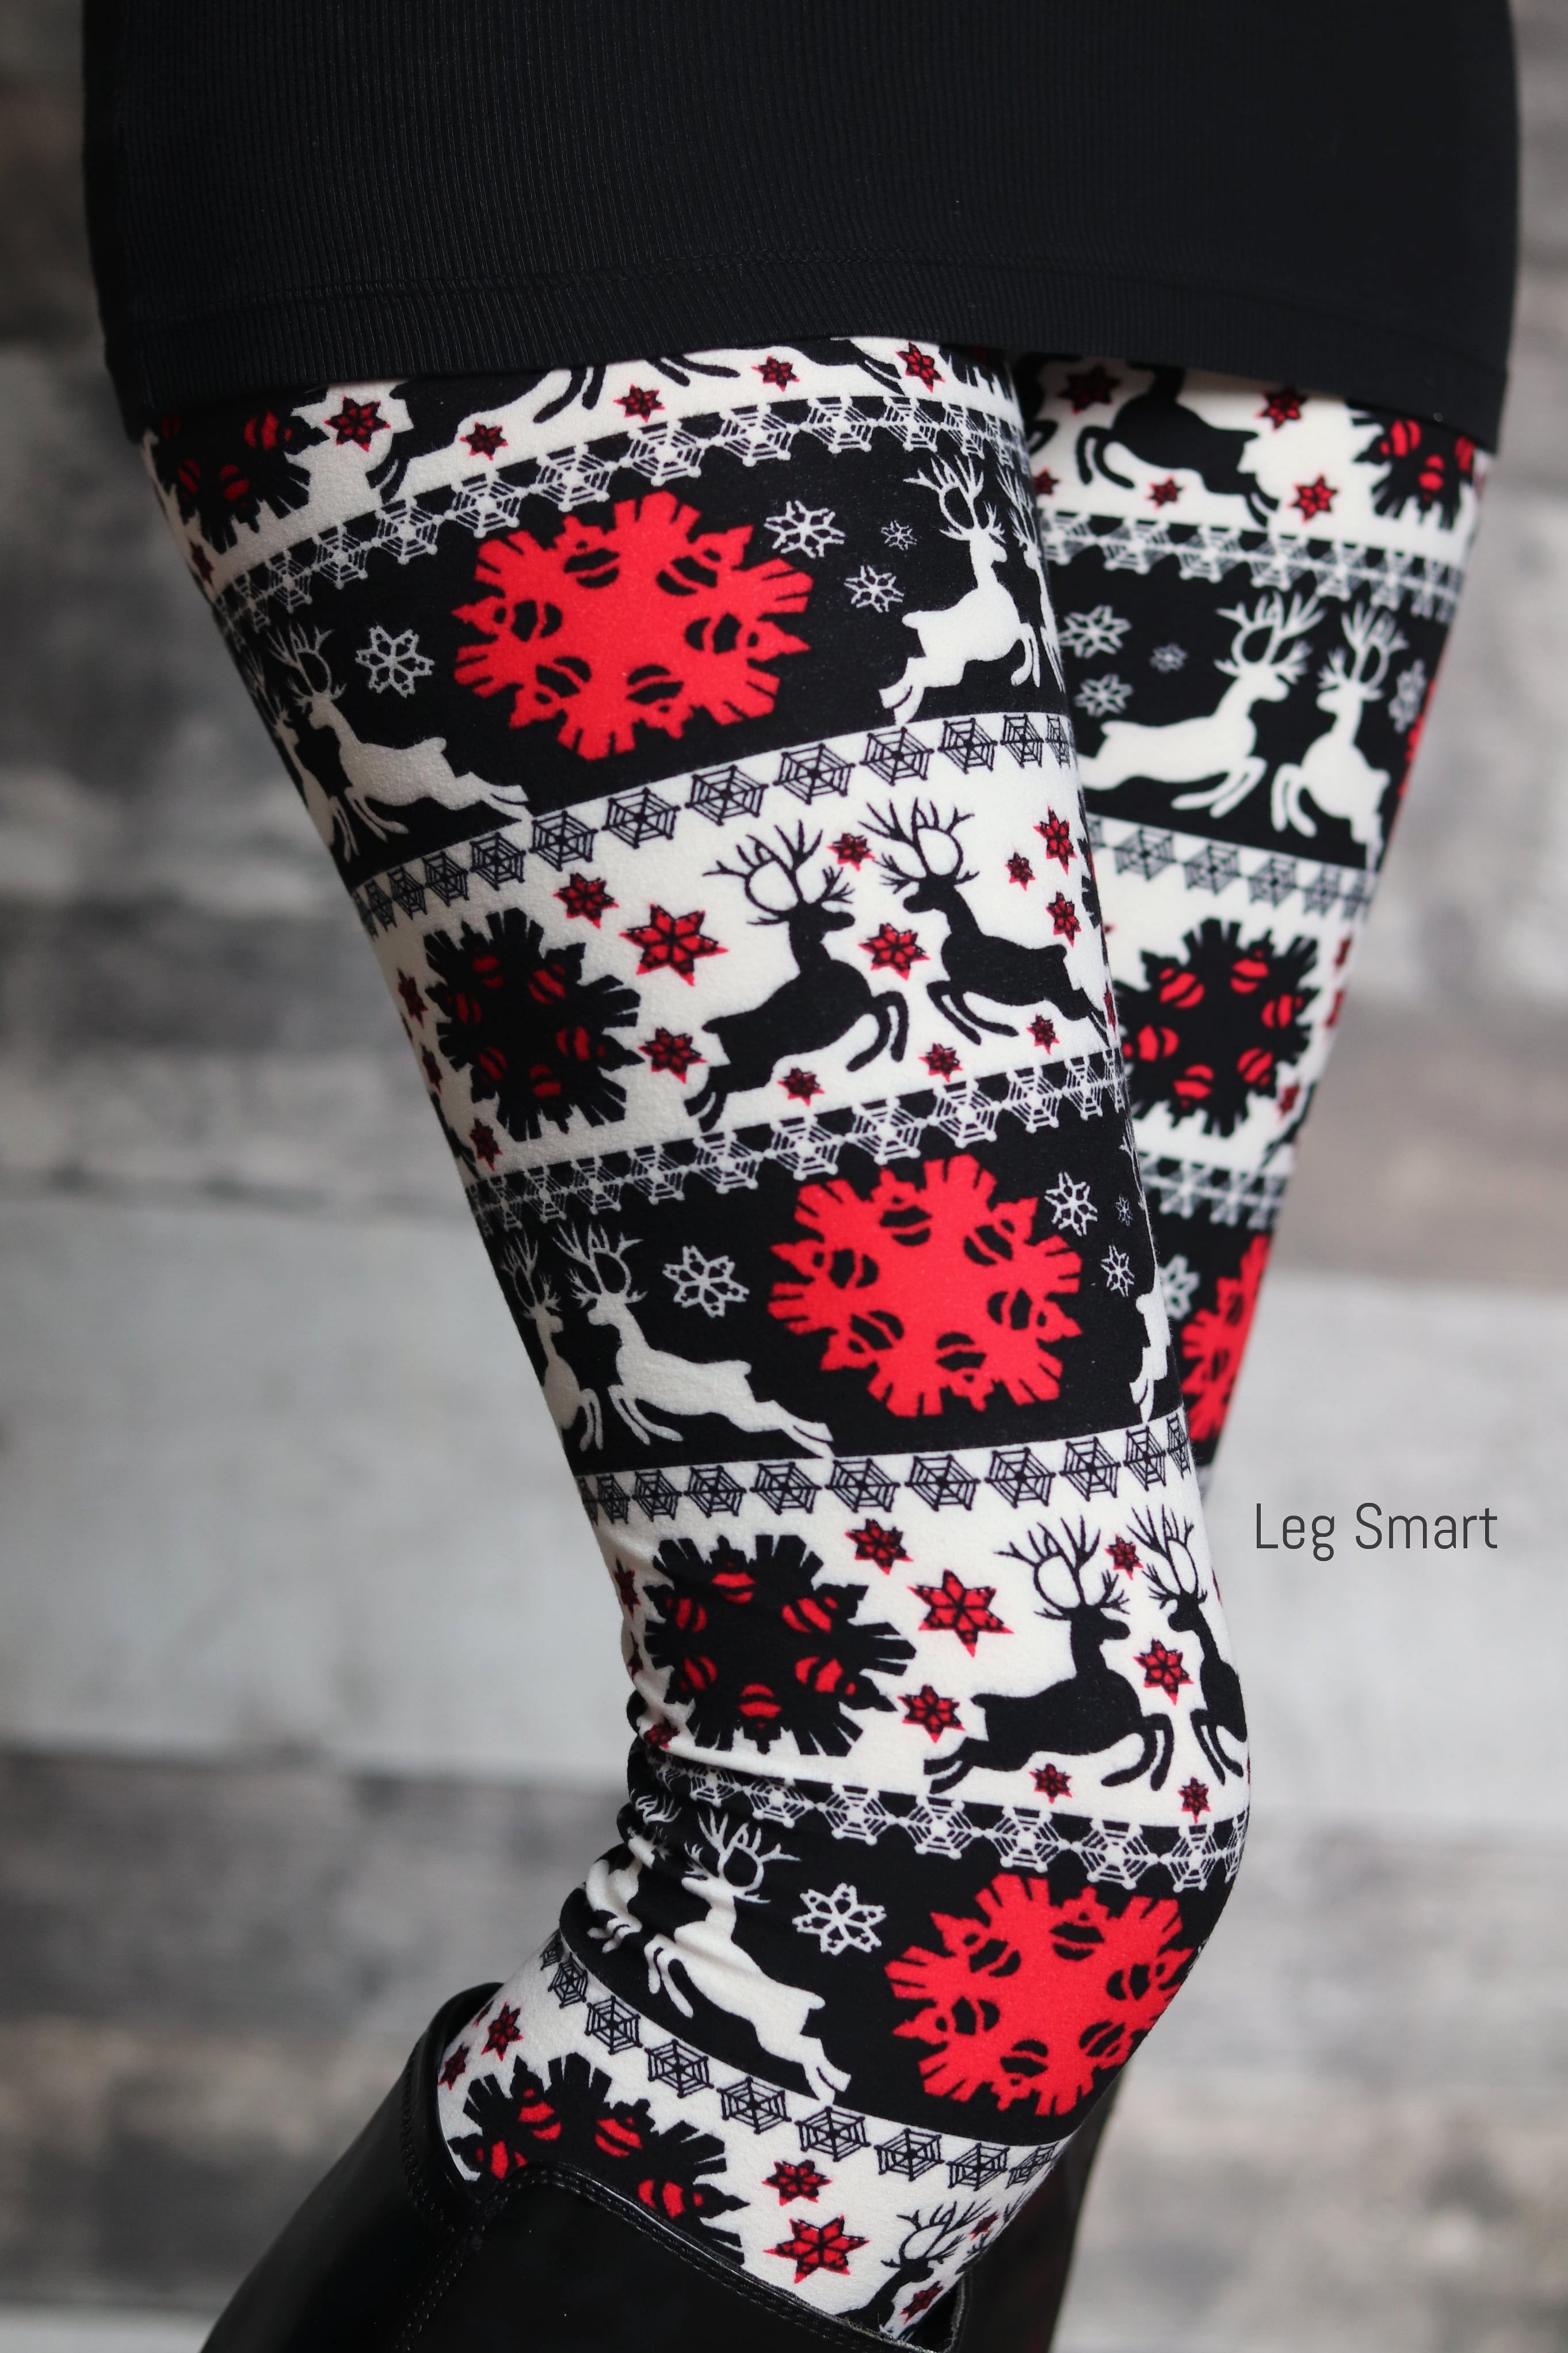 Black & Navy Reindeer Pattern Ugly Christmas Sweater Leggings | eBay